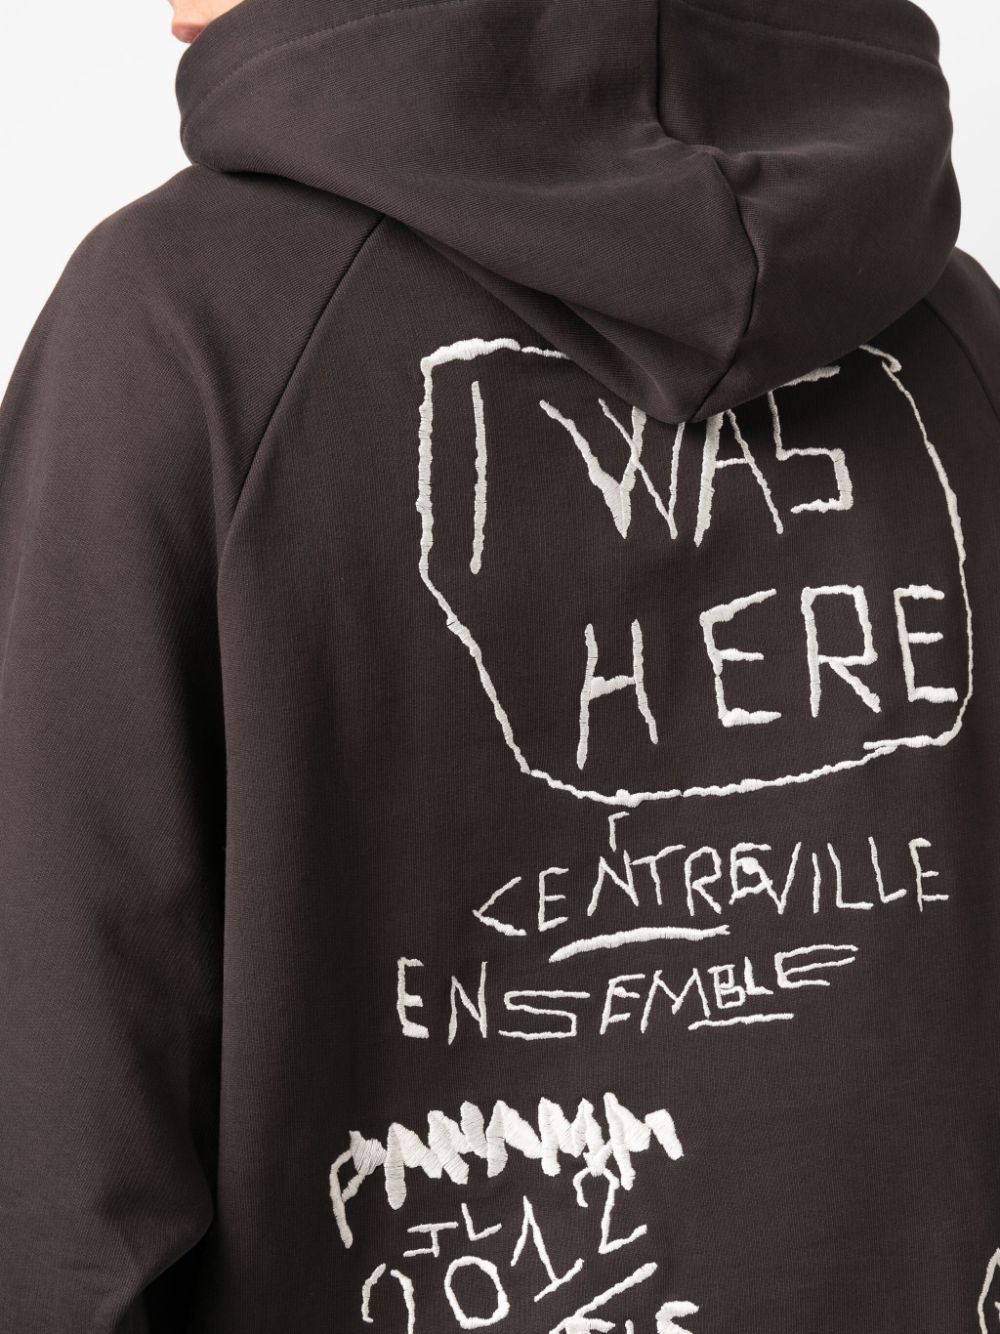 graffiti-embroidery organic cotton hoodie - 6